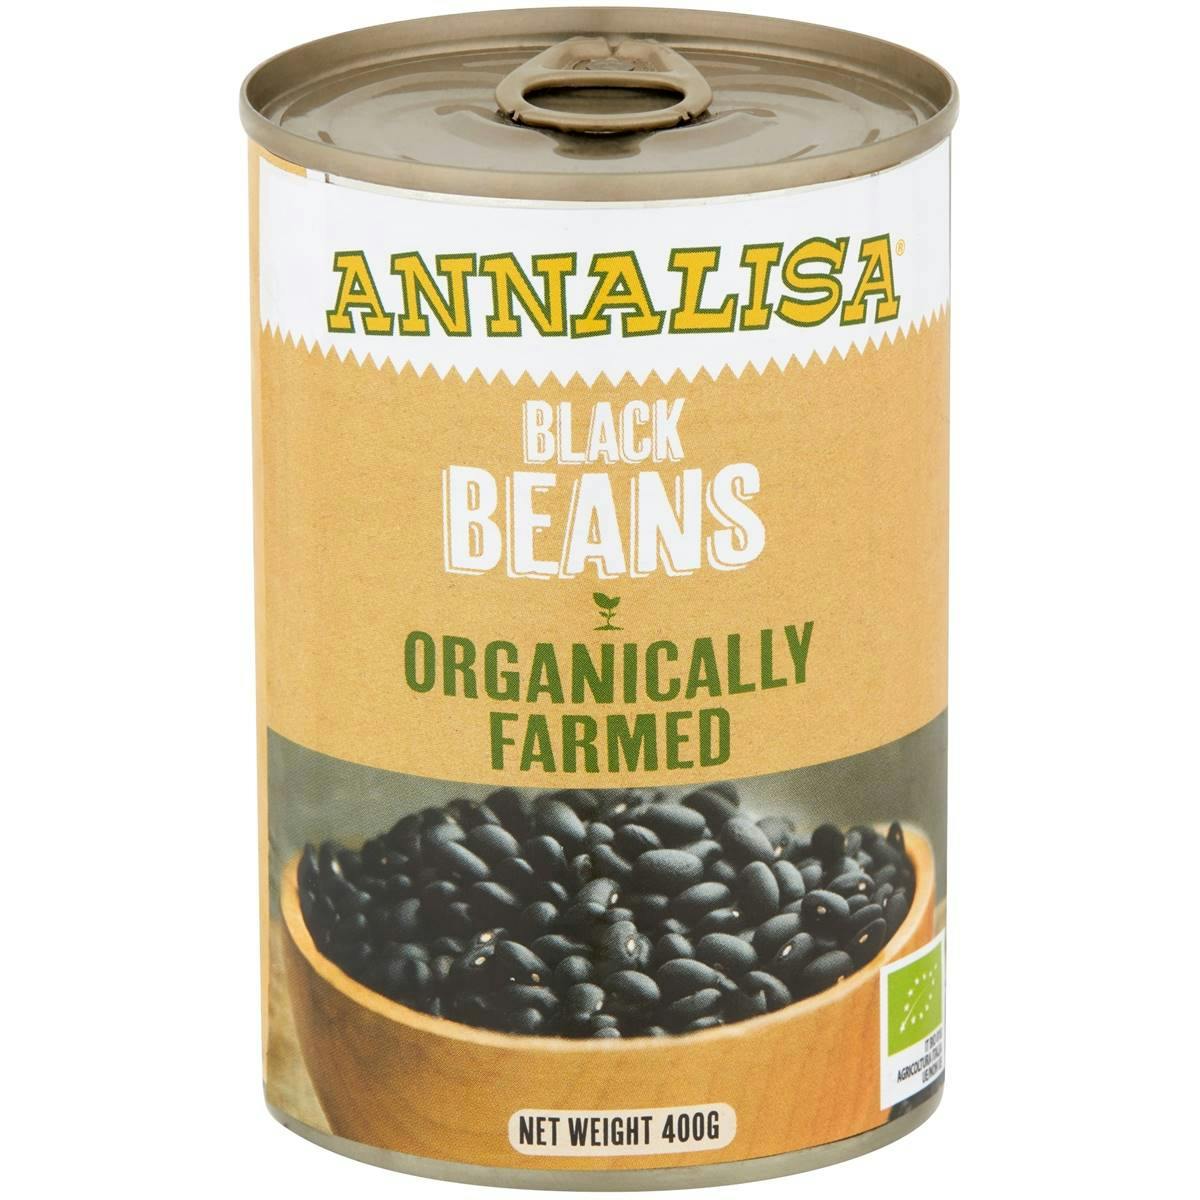 Annalisa Organically Farmed Black Beans